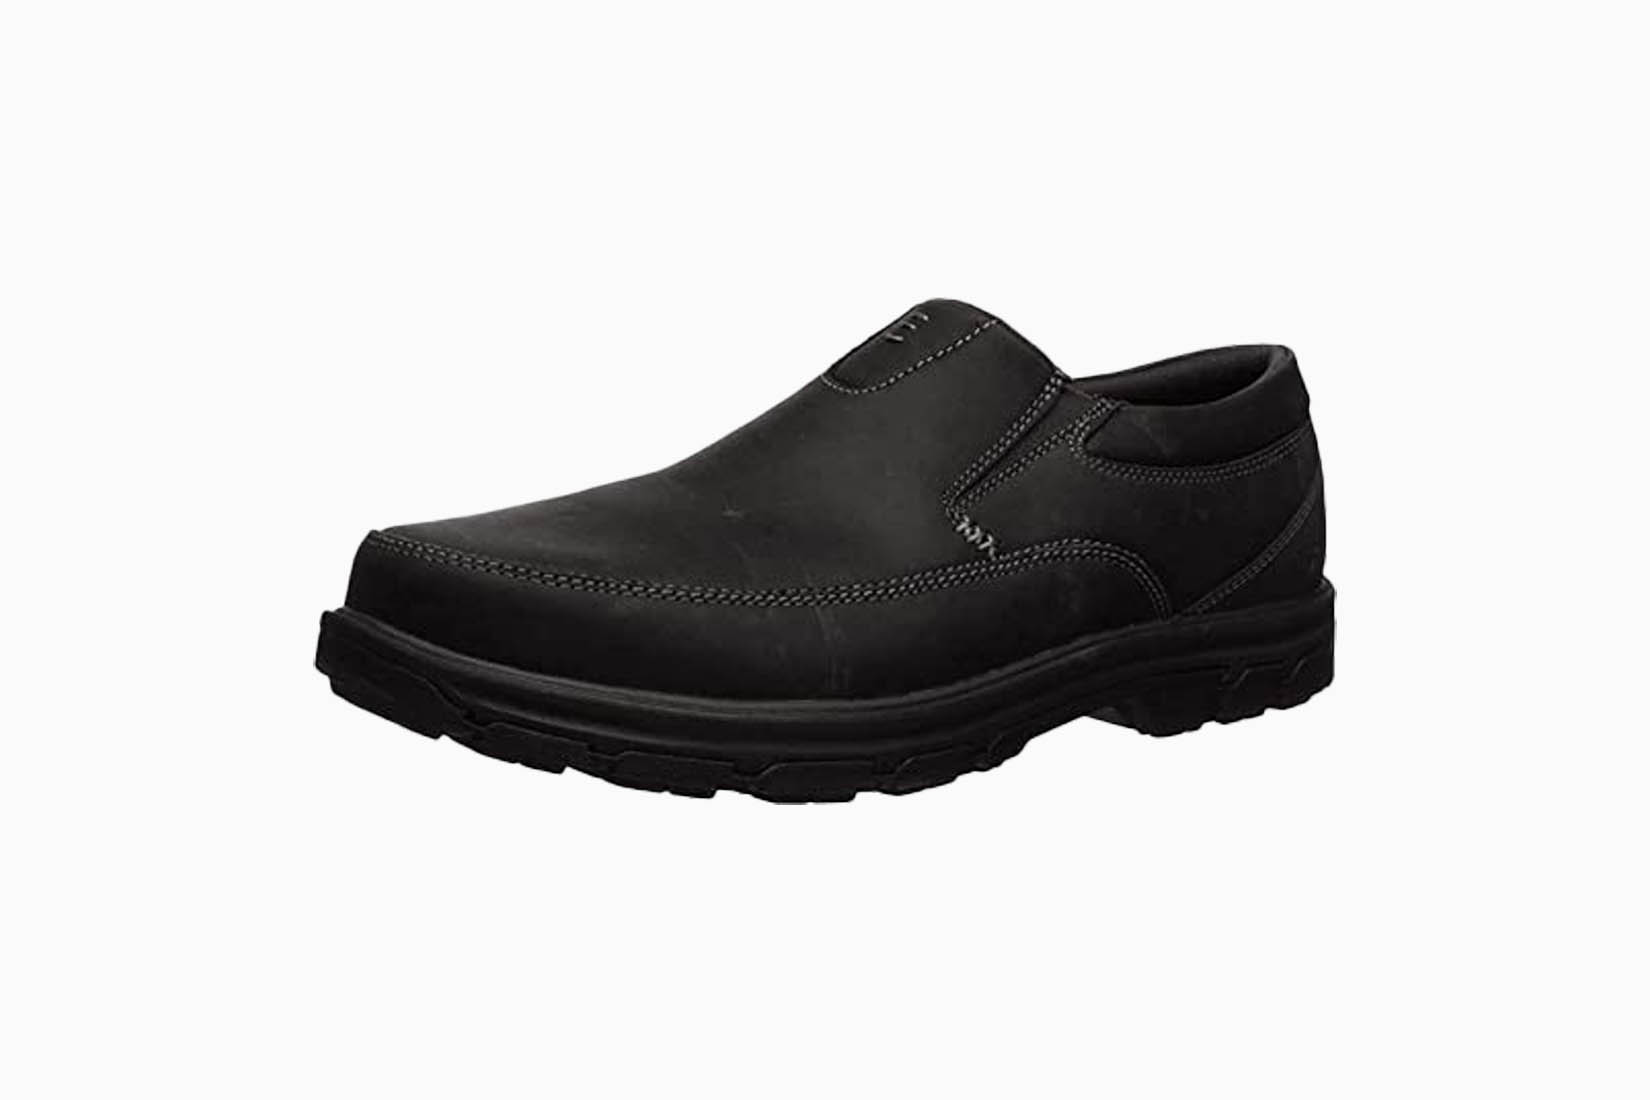  melhores sapatos para ficar de pé durante todo o dia Homens skechers revisão Luxe Digital 